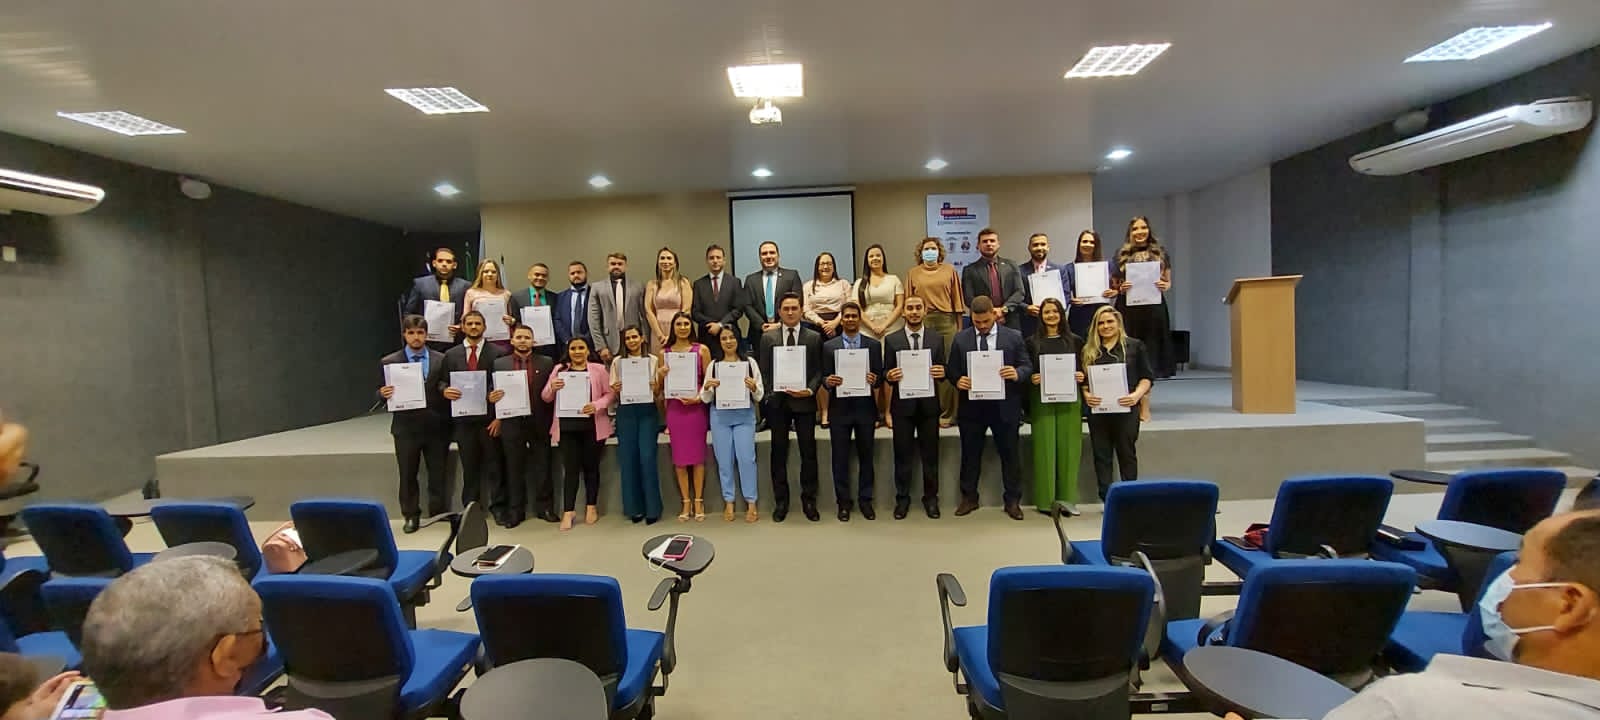 OAB de Picos realiza solenidade para novos advogados aprovados no Exame de Ordem